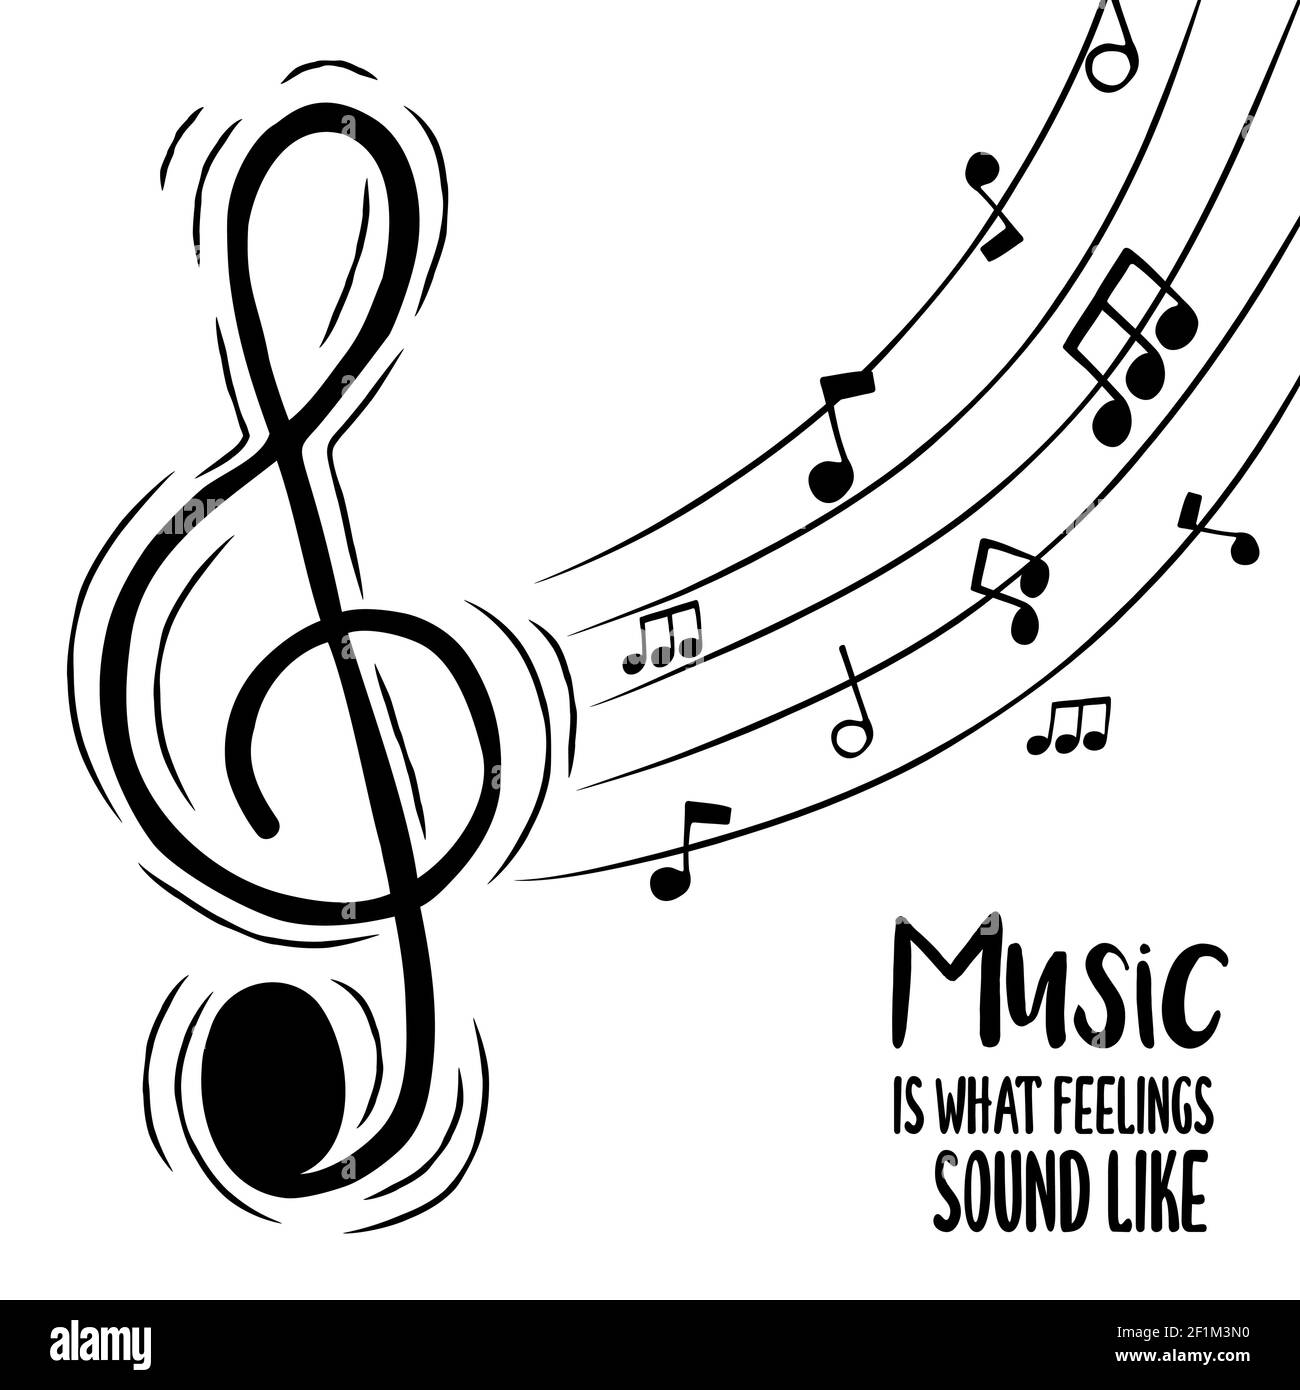 Musik ist, was Gefühle klingen wie Text Zitat Illustration für musikalische Liebe Konzept. Violinschlüssel Cartoon mit Audio Note Hintergrund. Stock Vektor